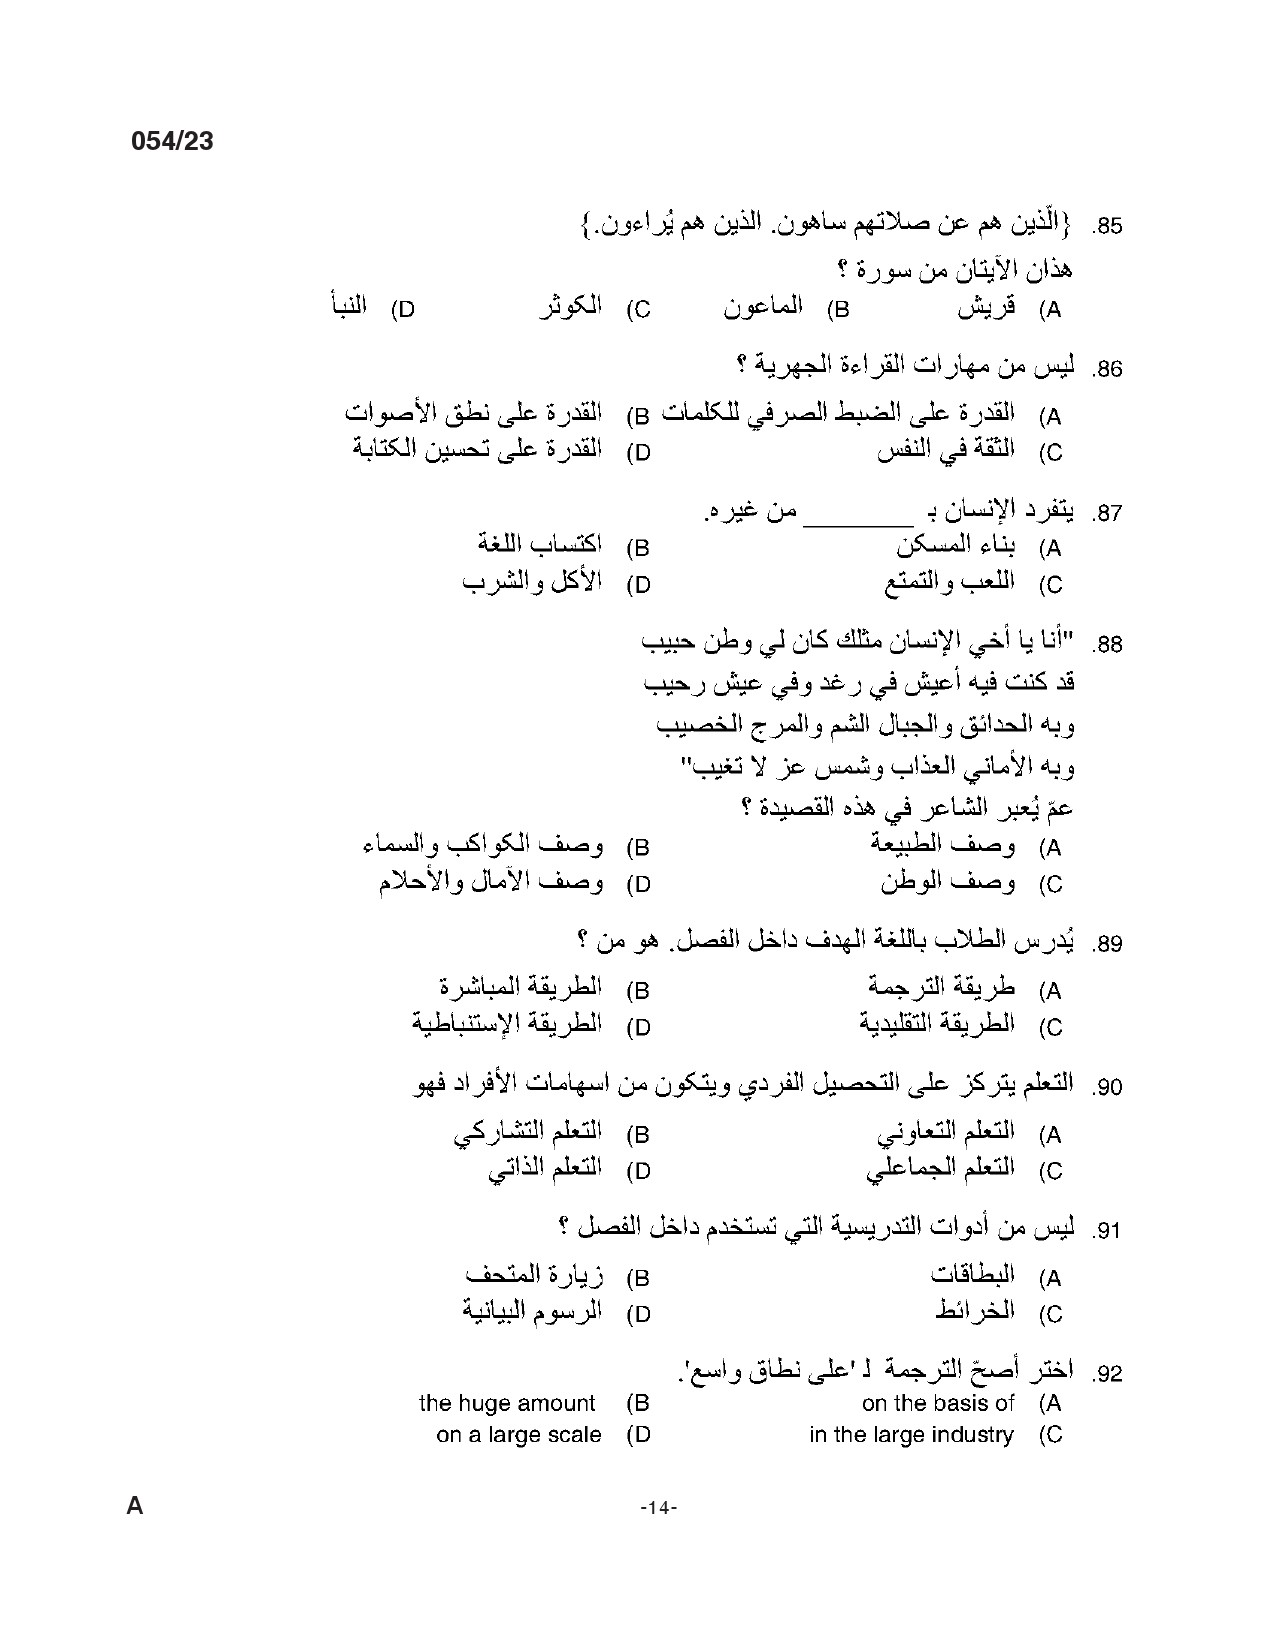 KPSC Full Time Junior Language Teacher Arabic Exam 2023 Code 0542023 13